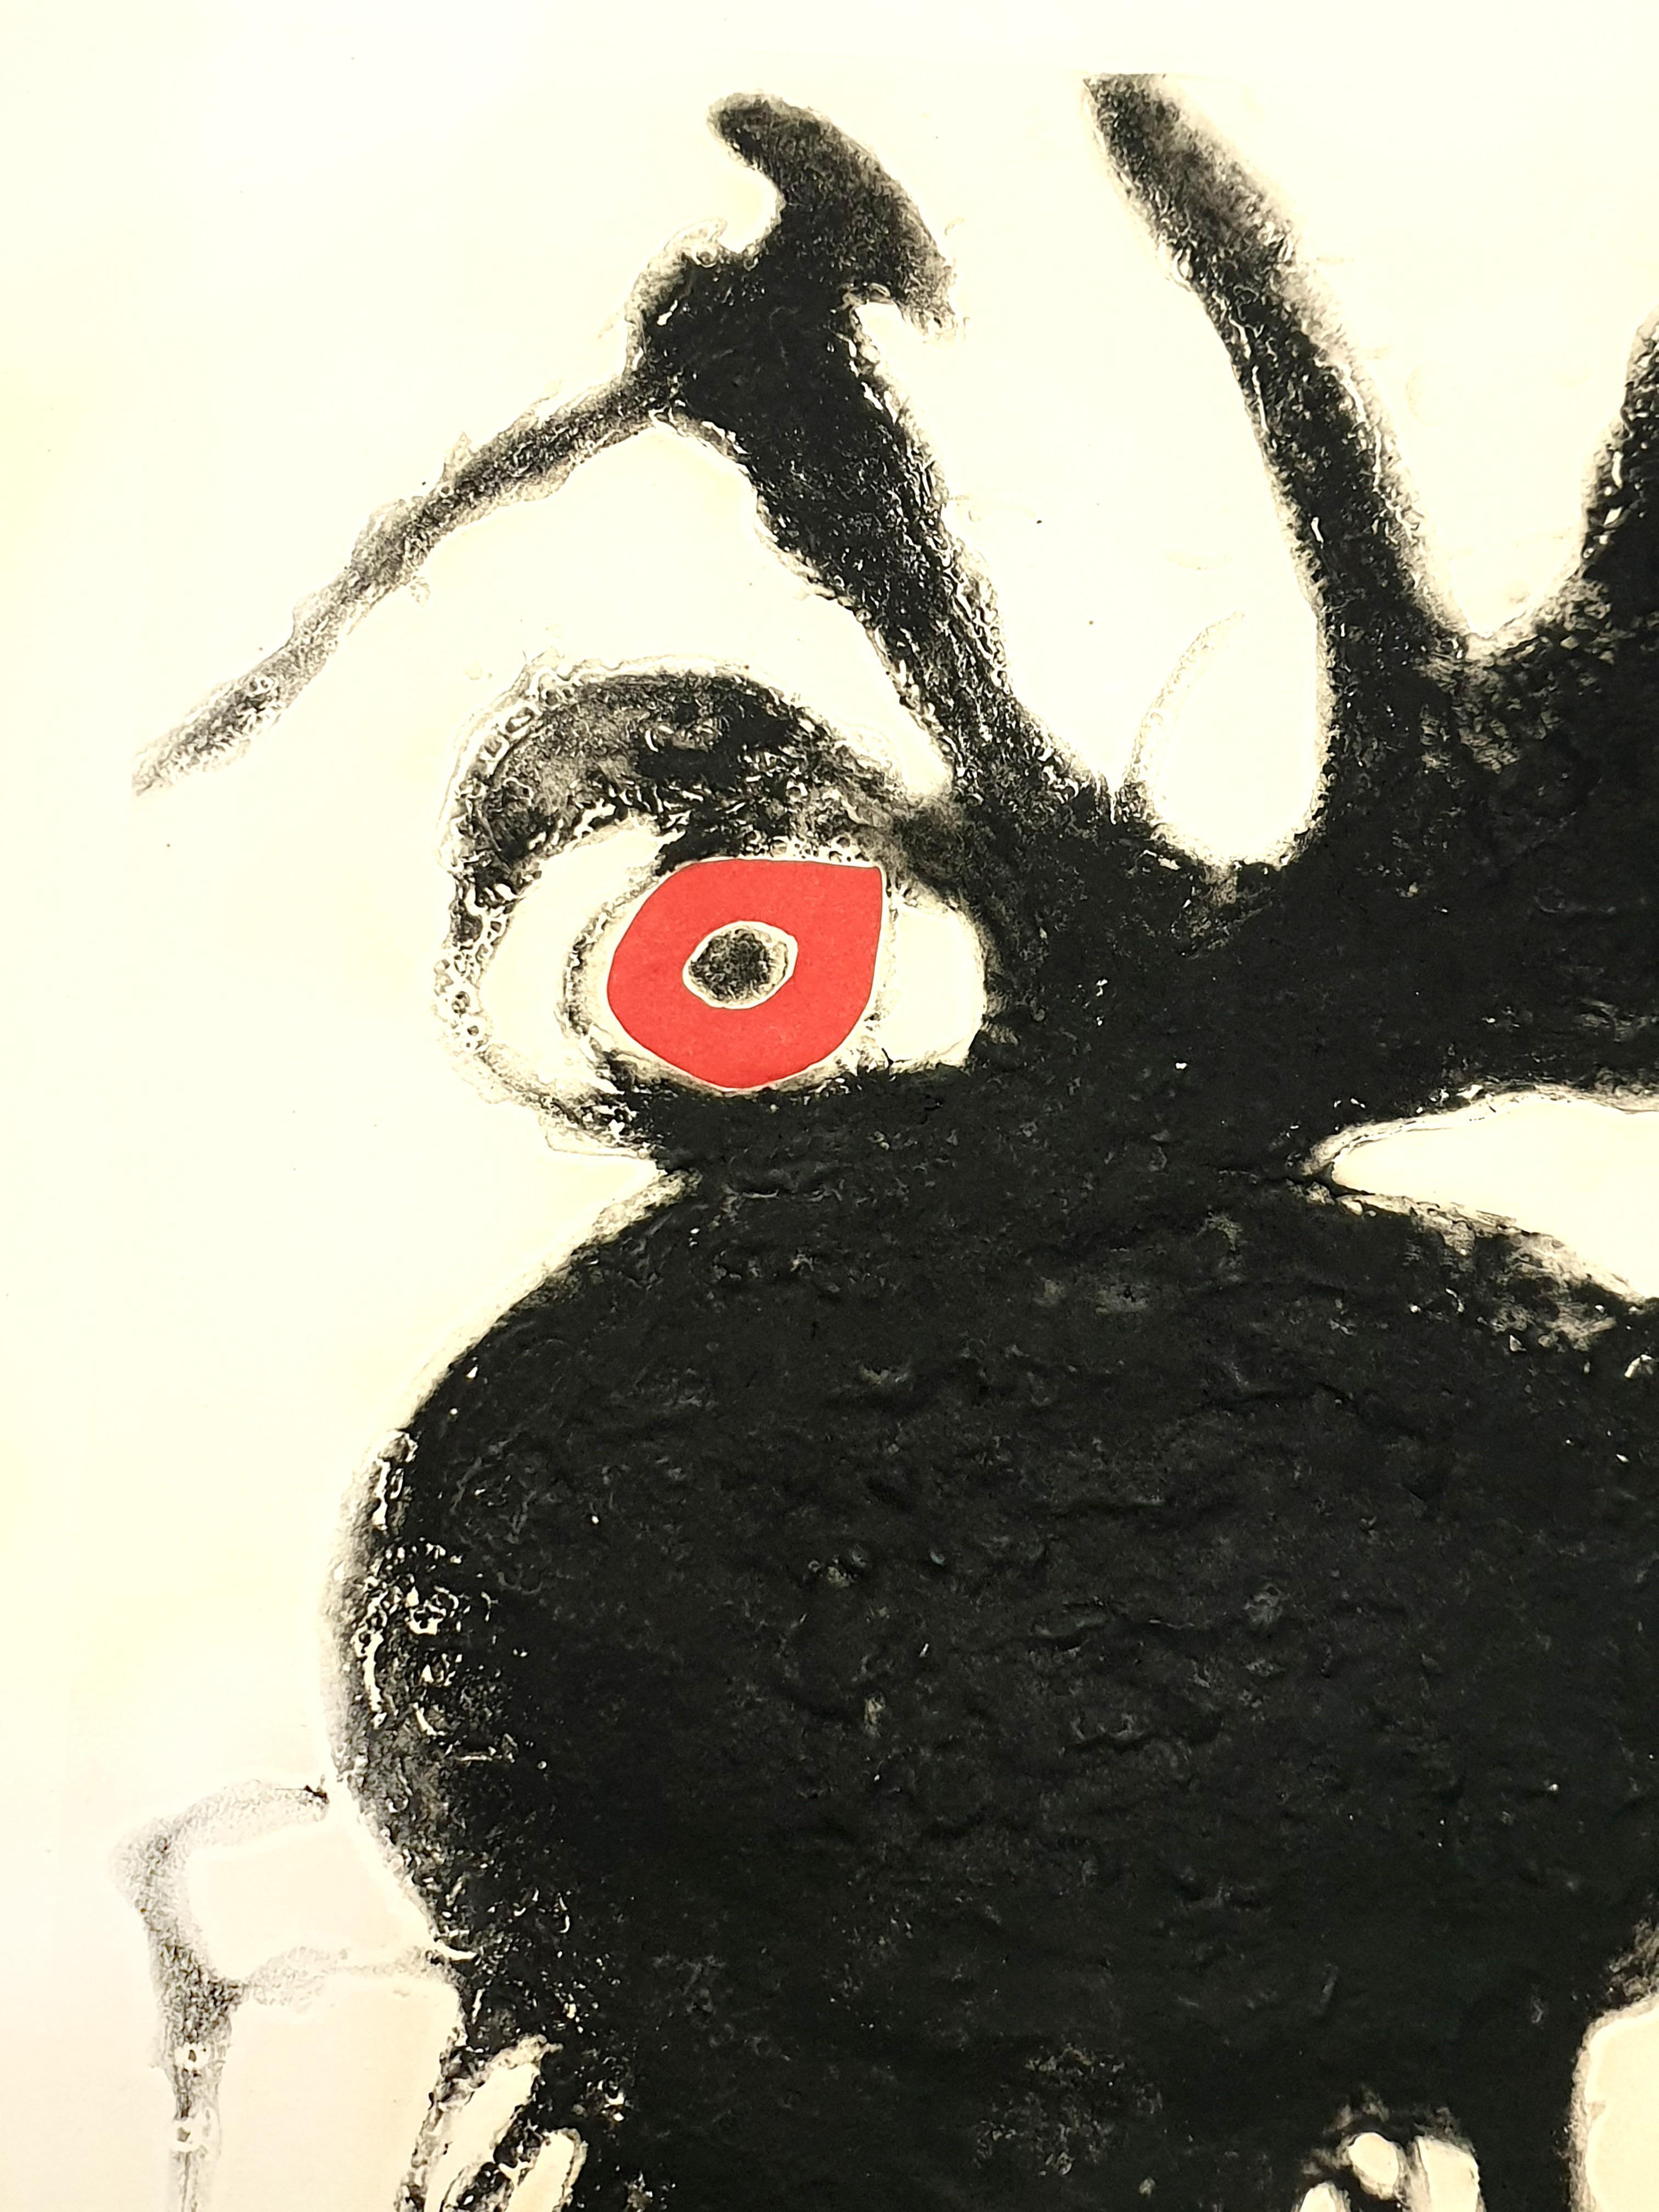 Joan Miro Platte IV von Espriu. 
Jahr: 1975
Handsigniert mit Bleistift
Auflage: HC (Hors Commerce) abgesehen von der Auflage von 50.
Auf Sala Gaspar mit Wasserzeichen
Herausgeber: Sala Gaspar, Barcelona
Abmessungen: 86.5 x 70 cm (Papier) 68,5 x 49,5